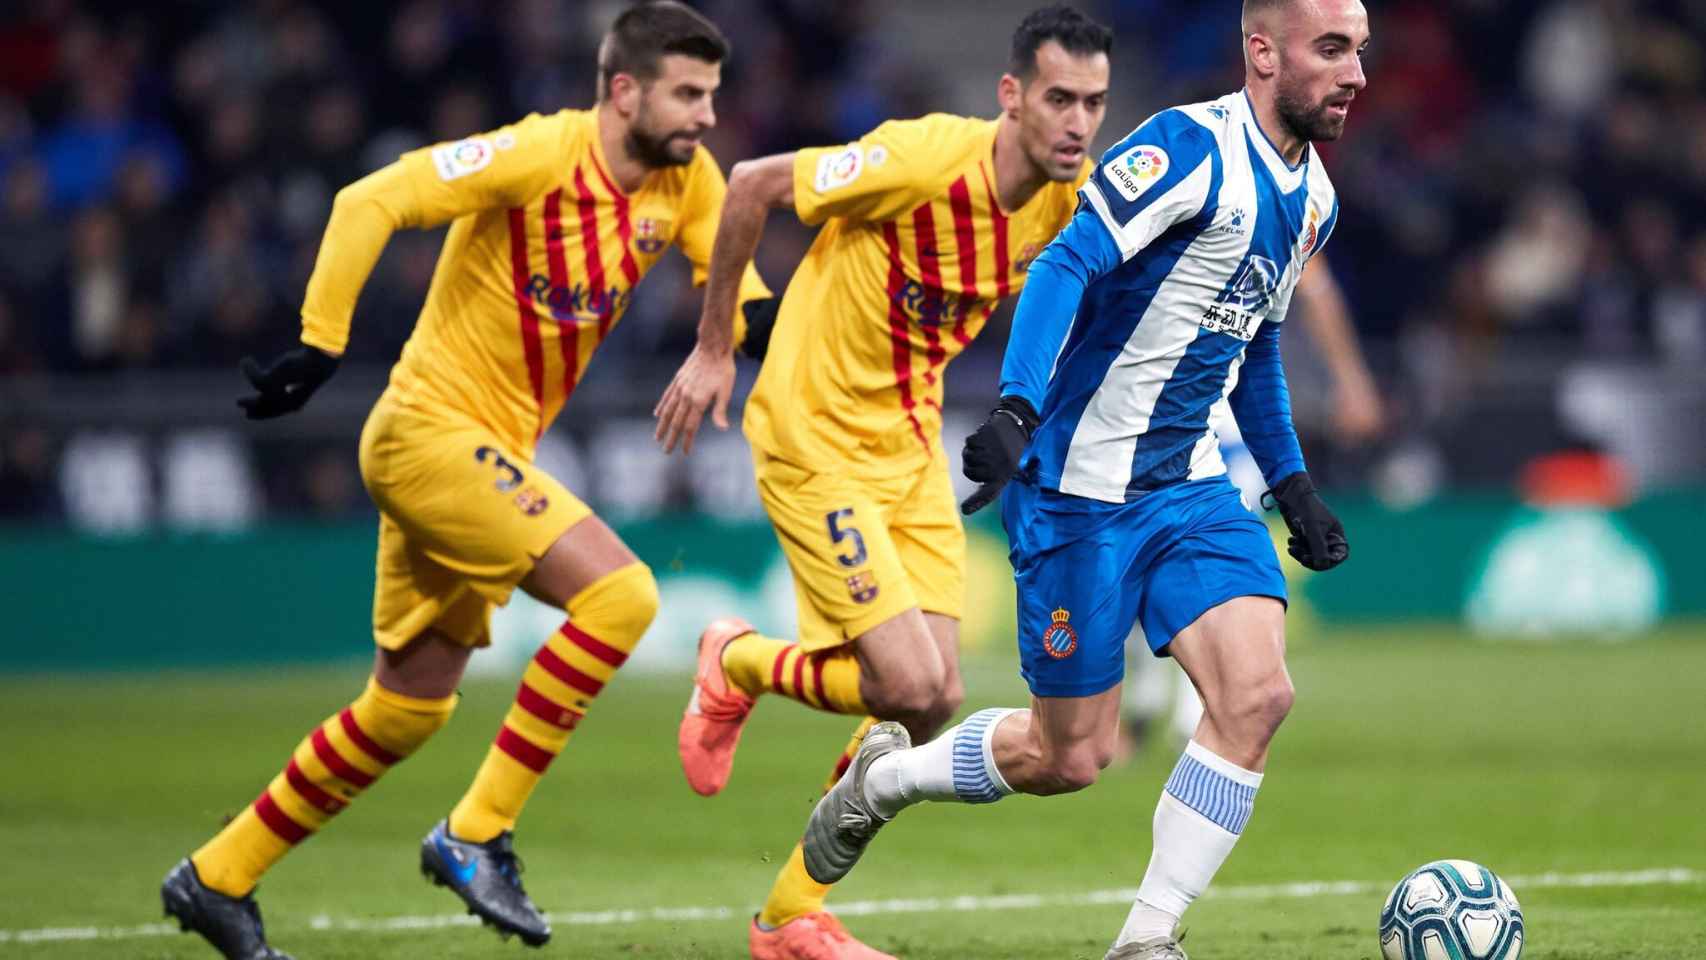 Imágenes de un encuentro entre el Espanyol y el Barça | EFE